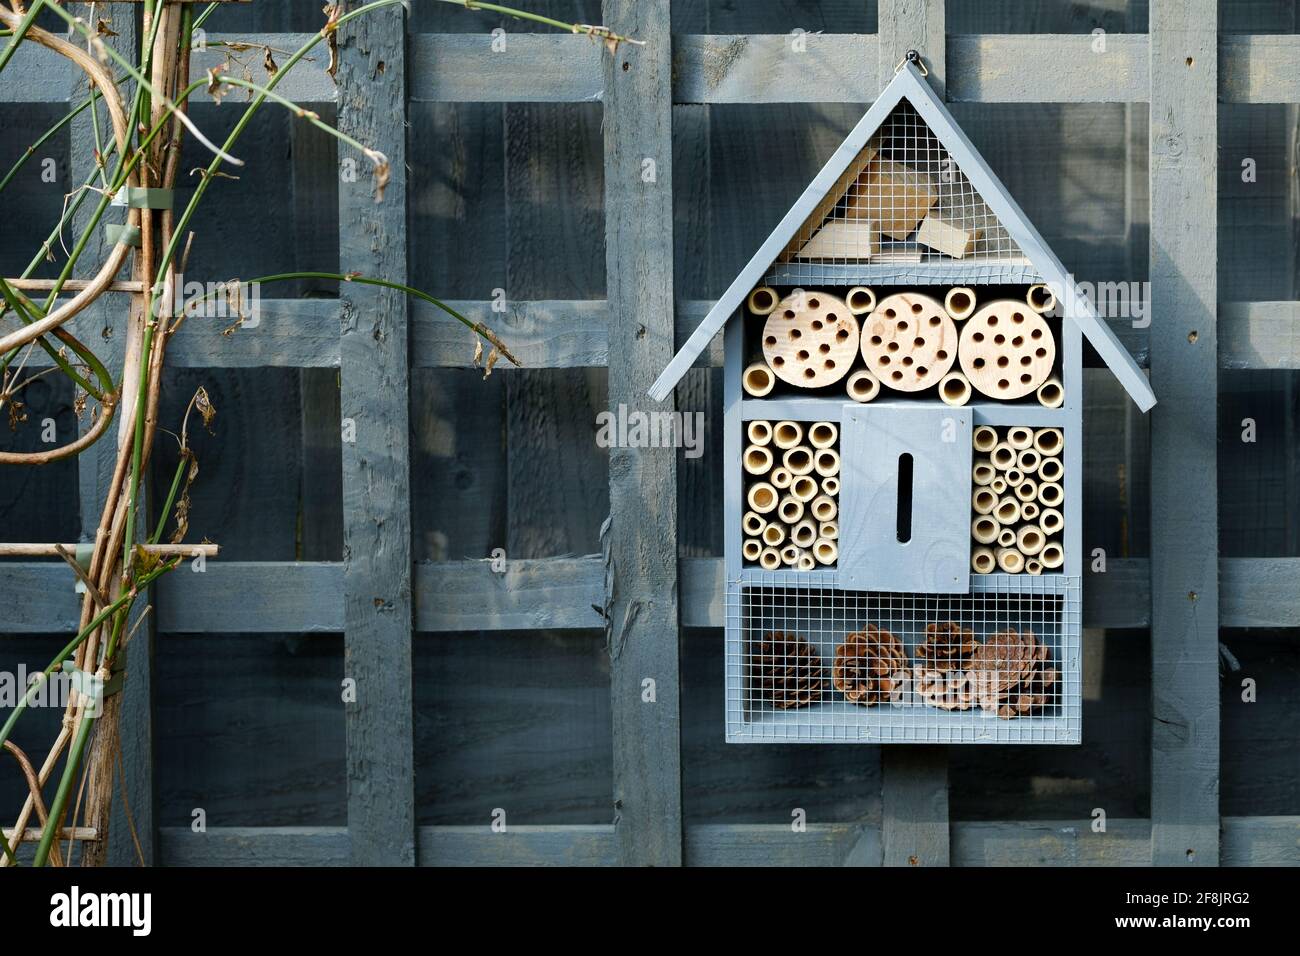 Ein Insektenhotel, ein Insektenhaus oder ein Insektenhotel, das in einem Hausgarten hängt. Die vom Menschen geschabekommen Struktur bietet Schutz für Insekten, einschließlich einsamer Bienen Stockfoto